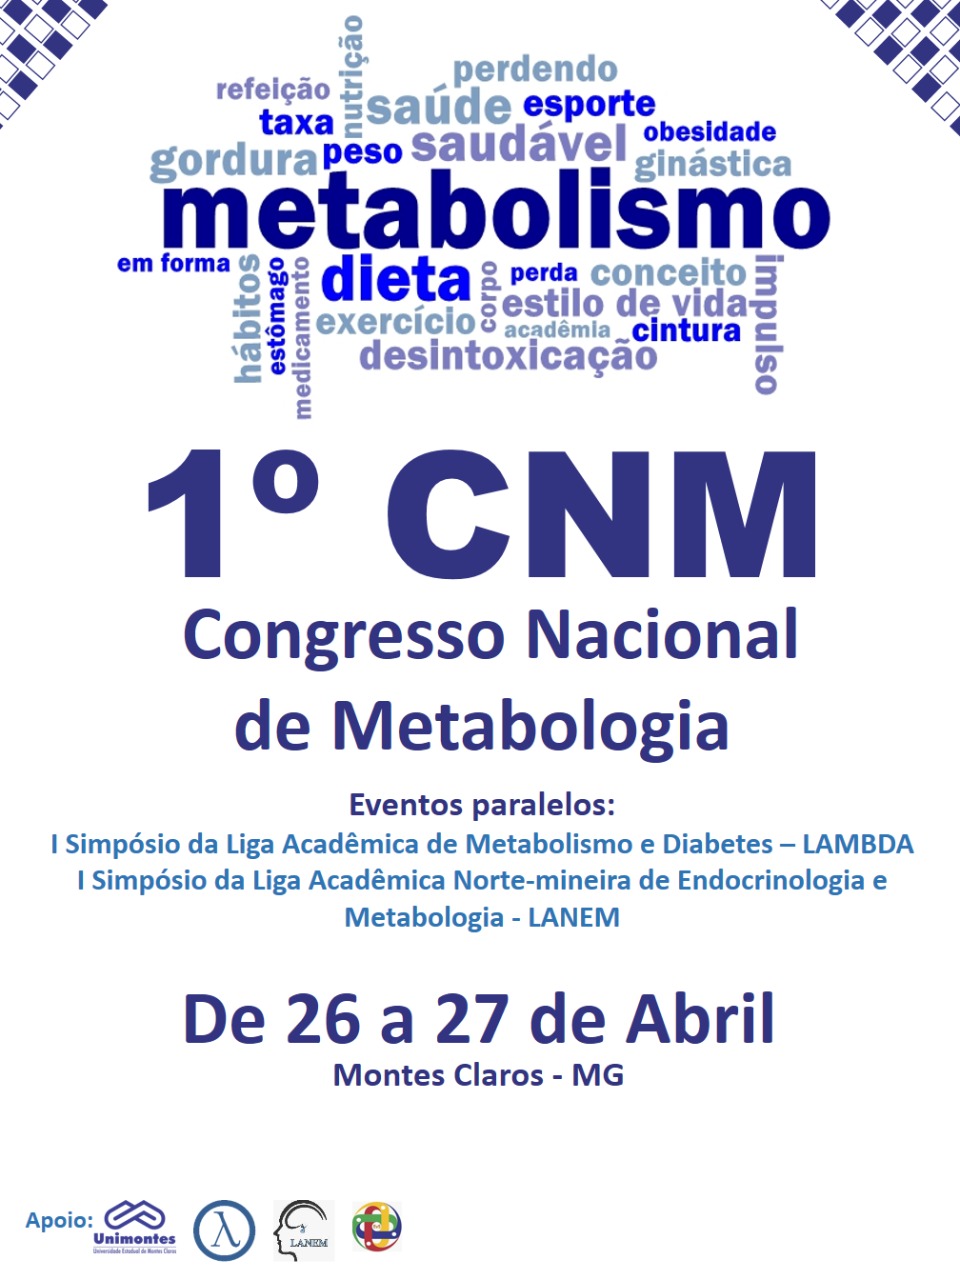 					Visualizar 2019: Anais do I Congresso de Metabologia: Obesidade em foco
				